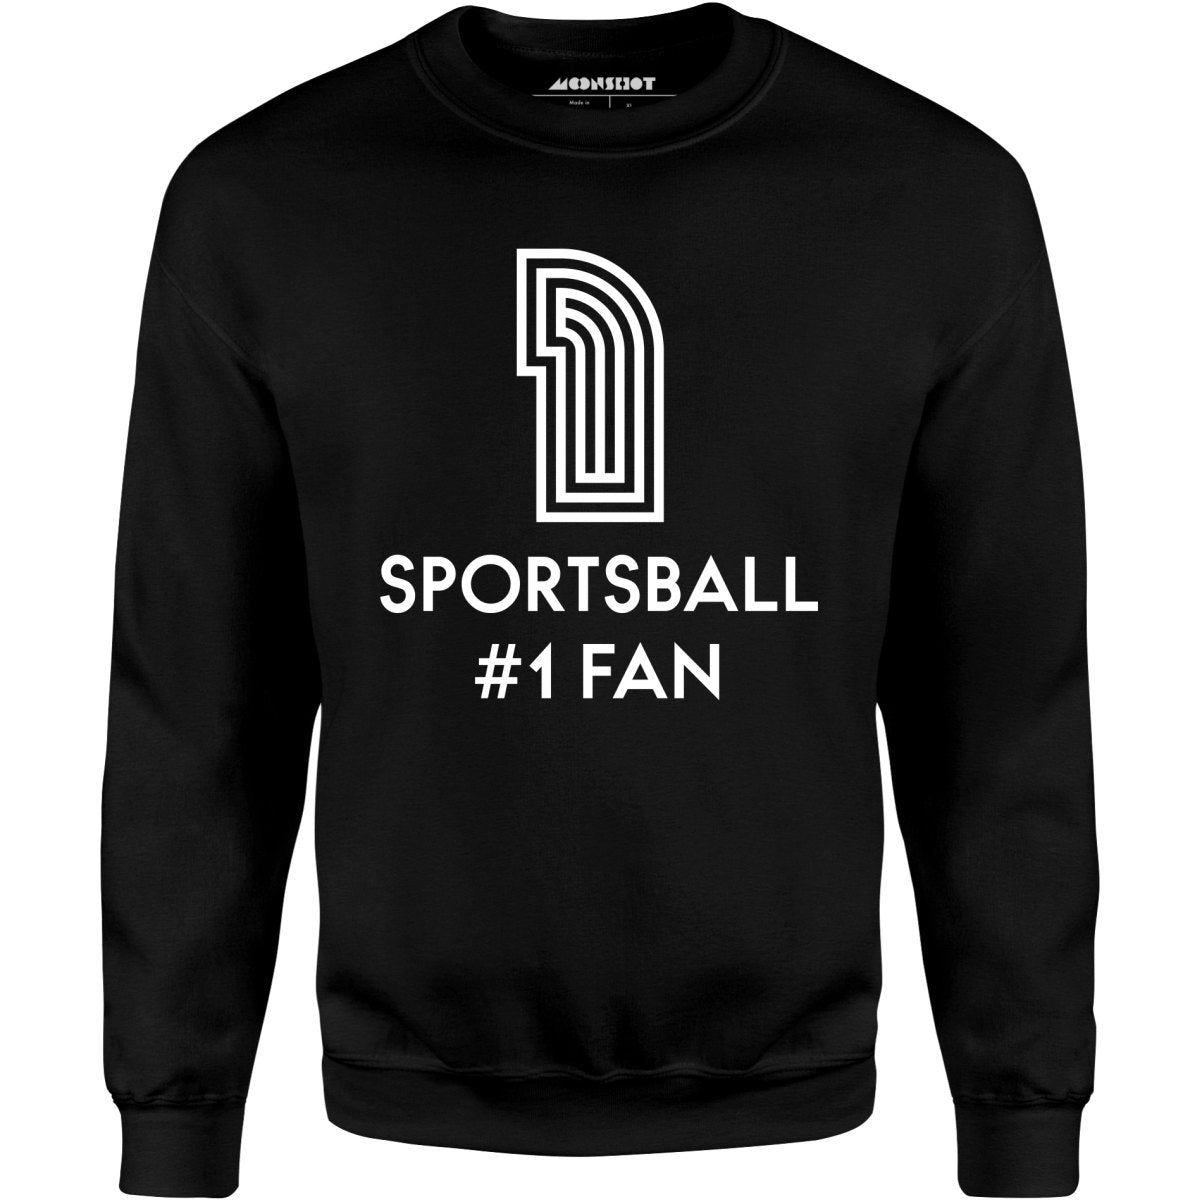 Sportsball #1 Fan - Unisex Sweatshirt